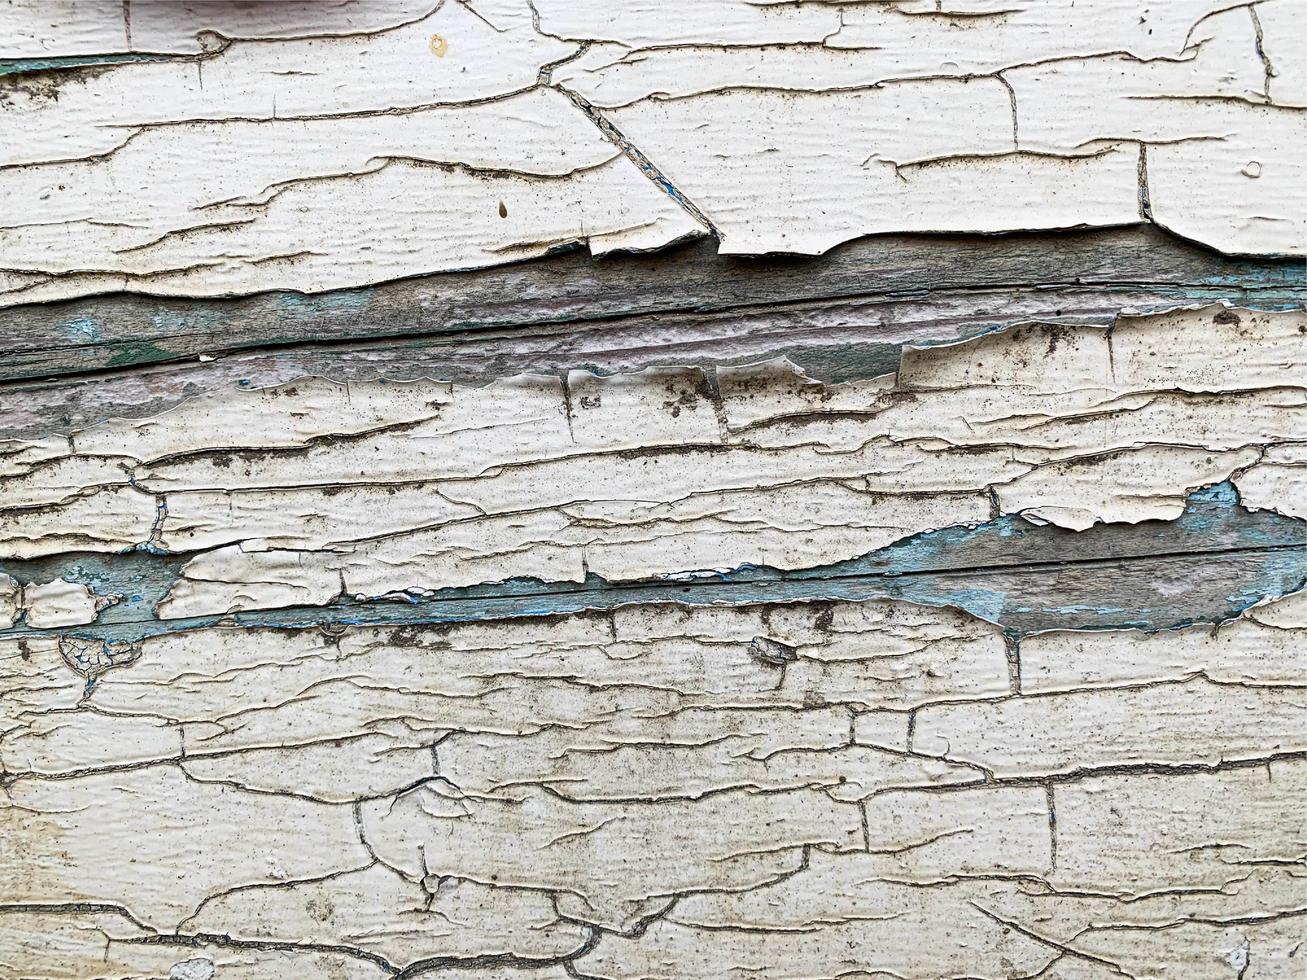 parede de madeira com textura de tinta resistida foto